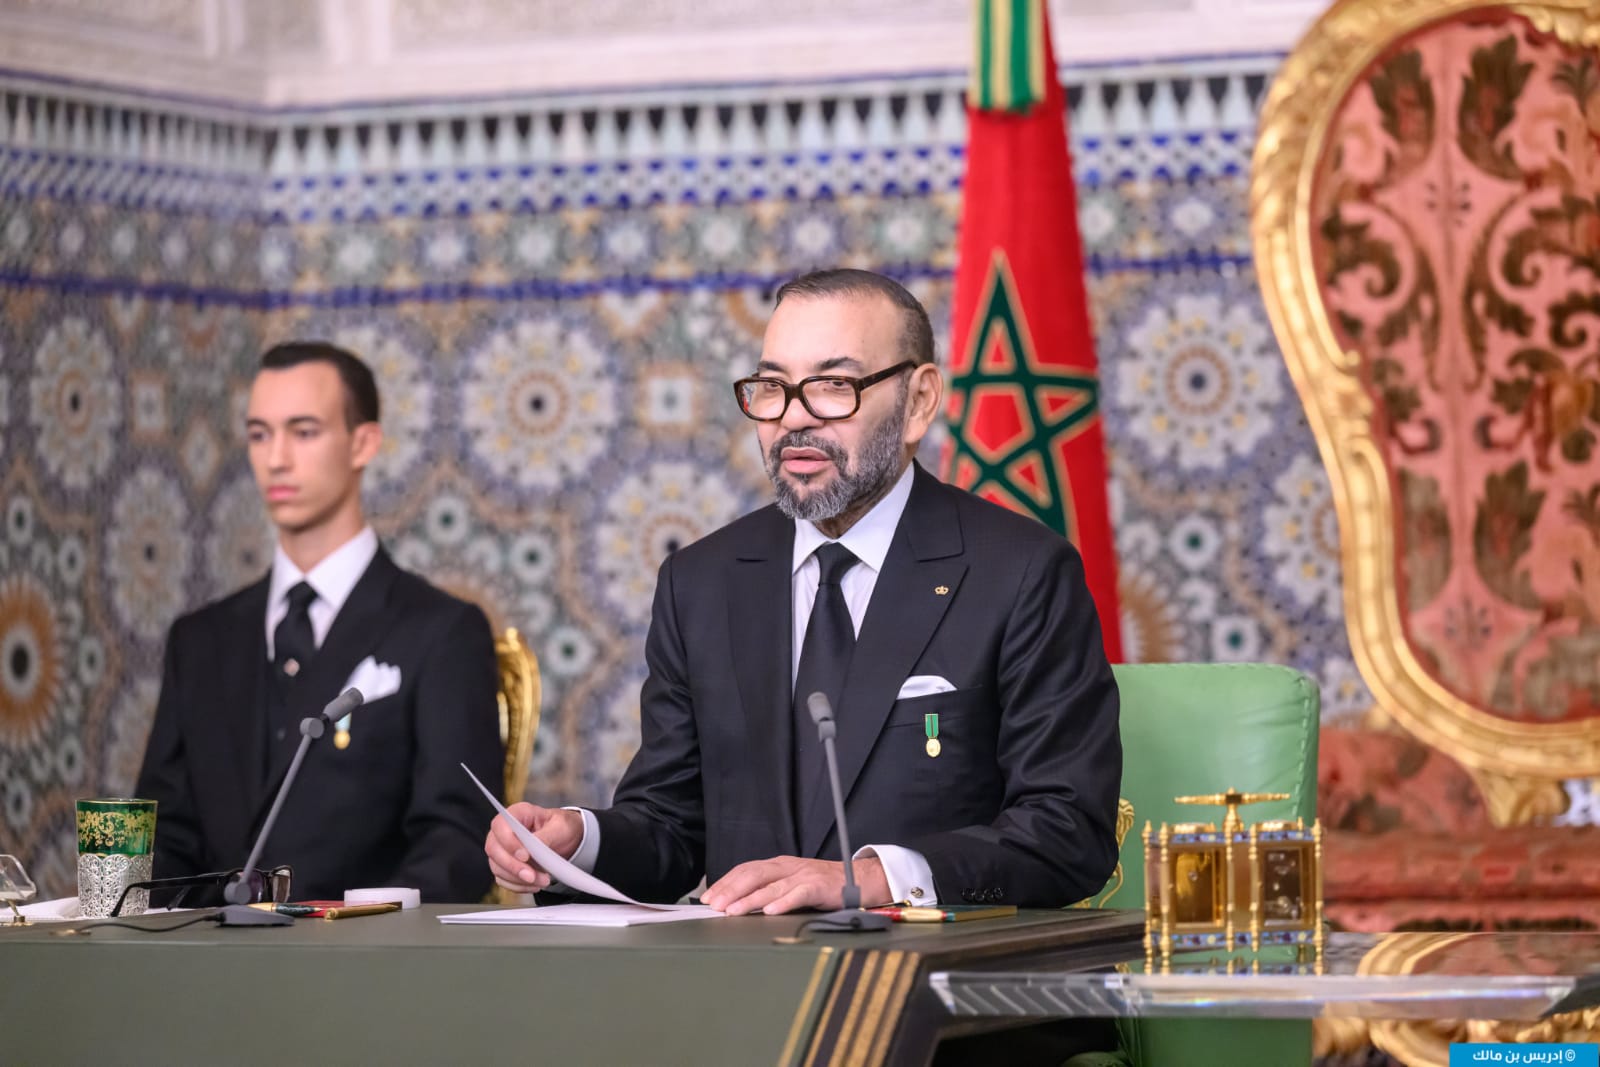 SM le Roi invite le président du Nigéria à effectuer une visite officielle au Maroc 